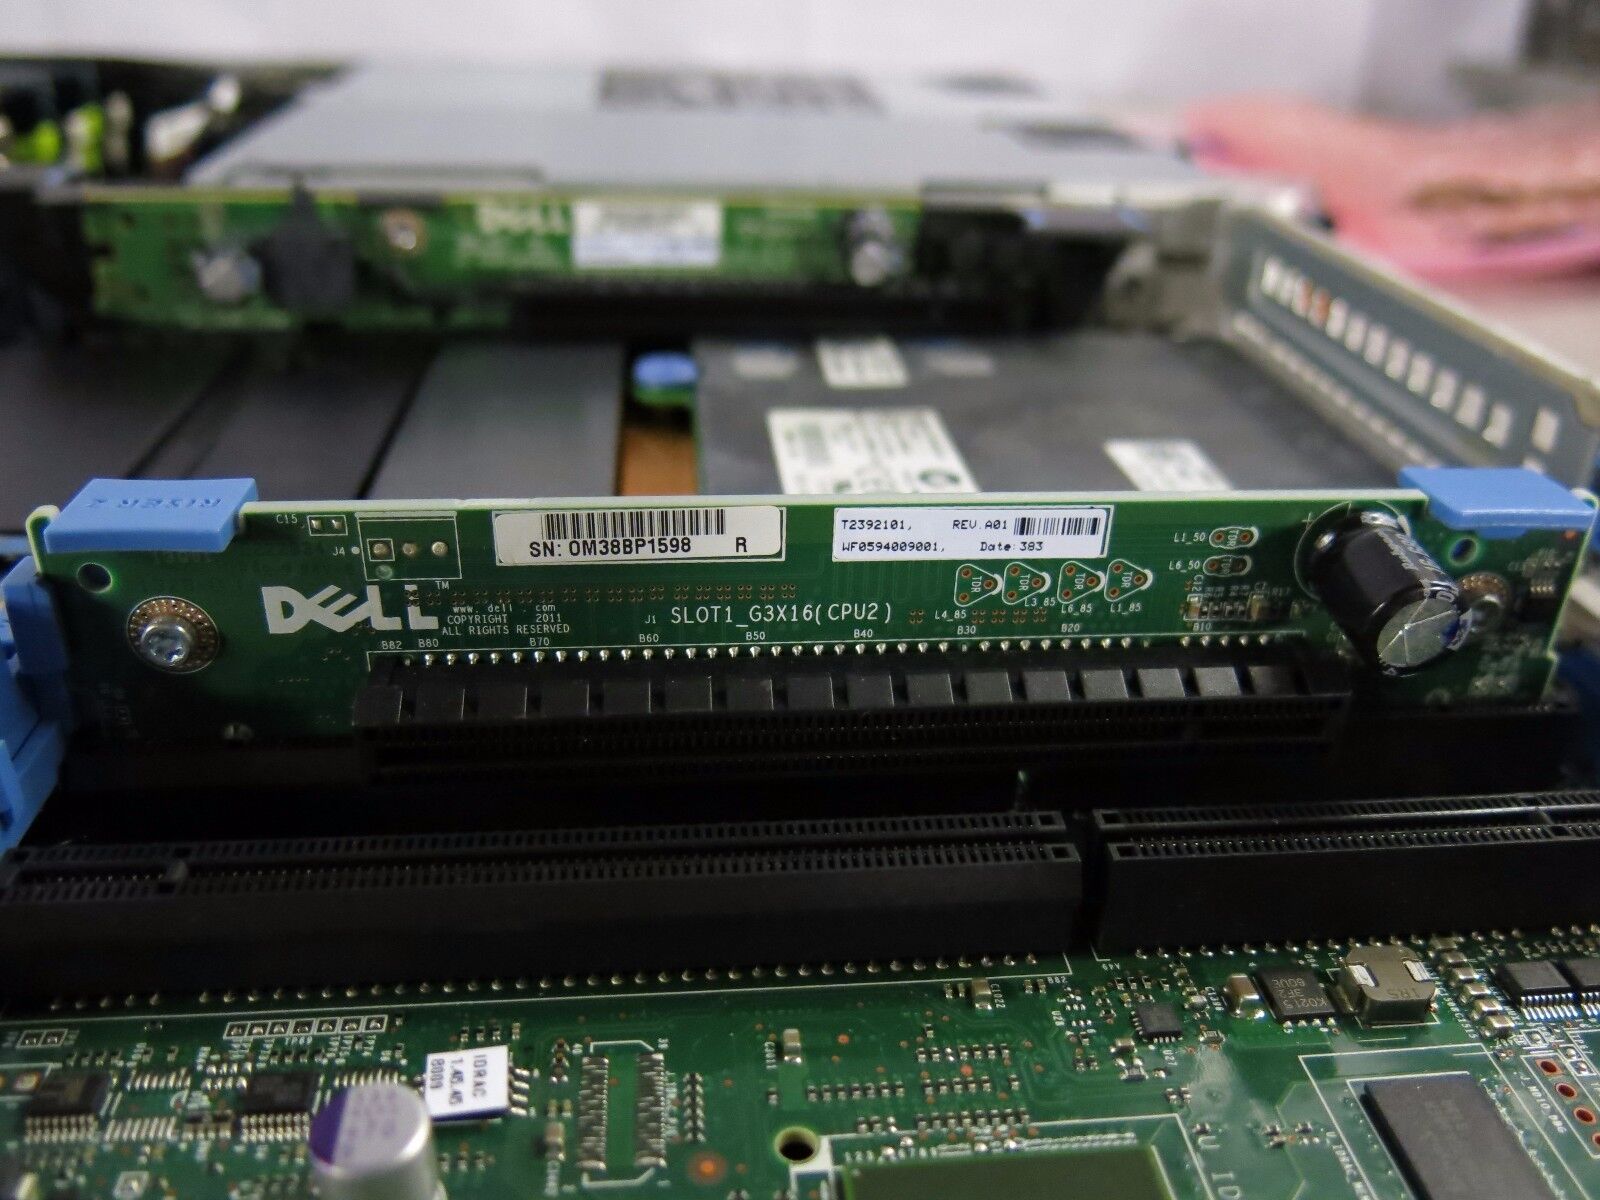 Dell PowerEdge R620 2x E5-2697V2 128GB 2x 400GB SAS SSD 2x PSU RPS.